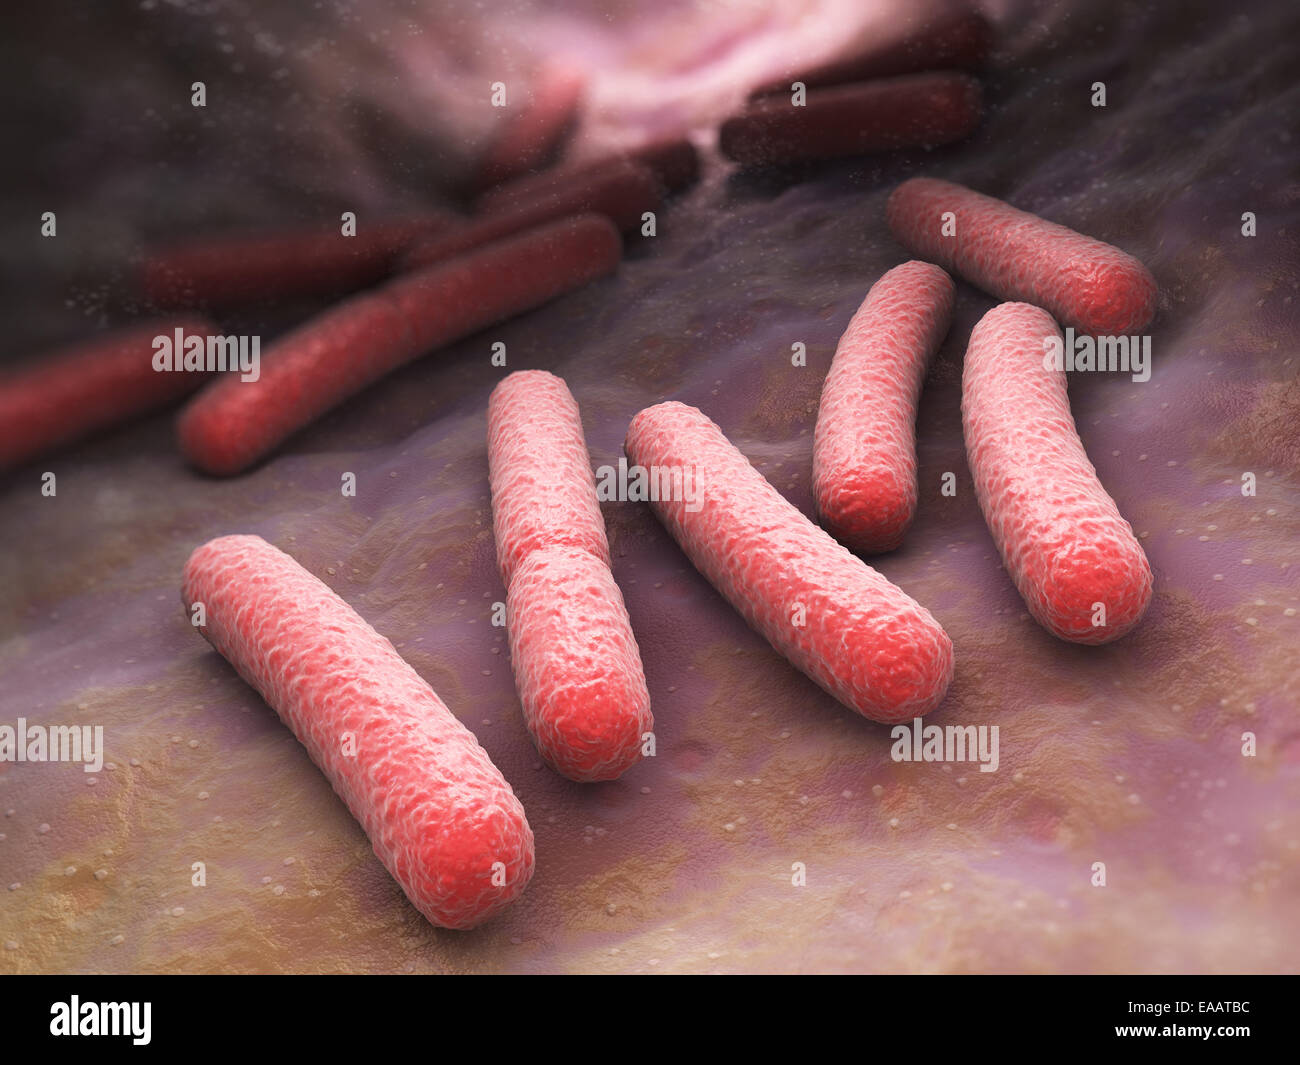 Escherichia coli bacteria cells Stock Photo